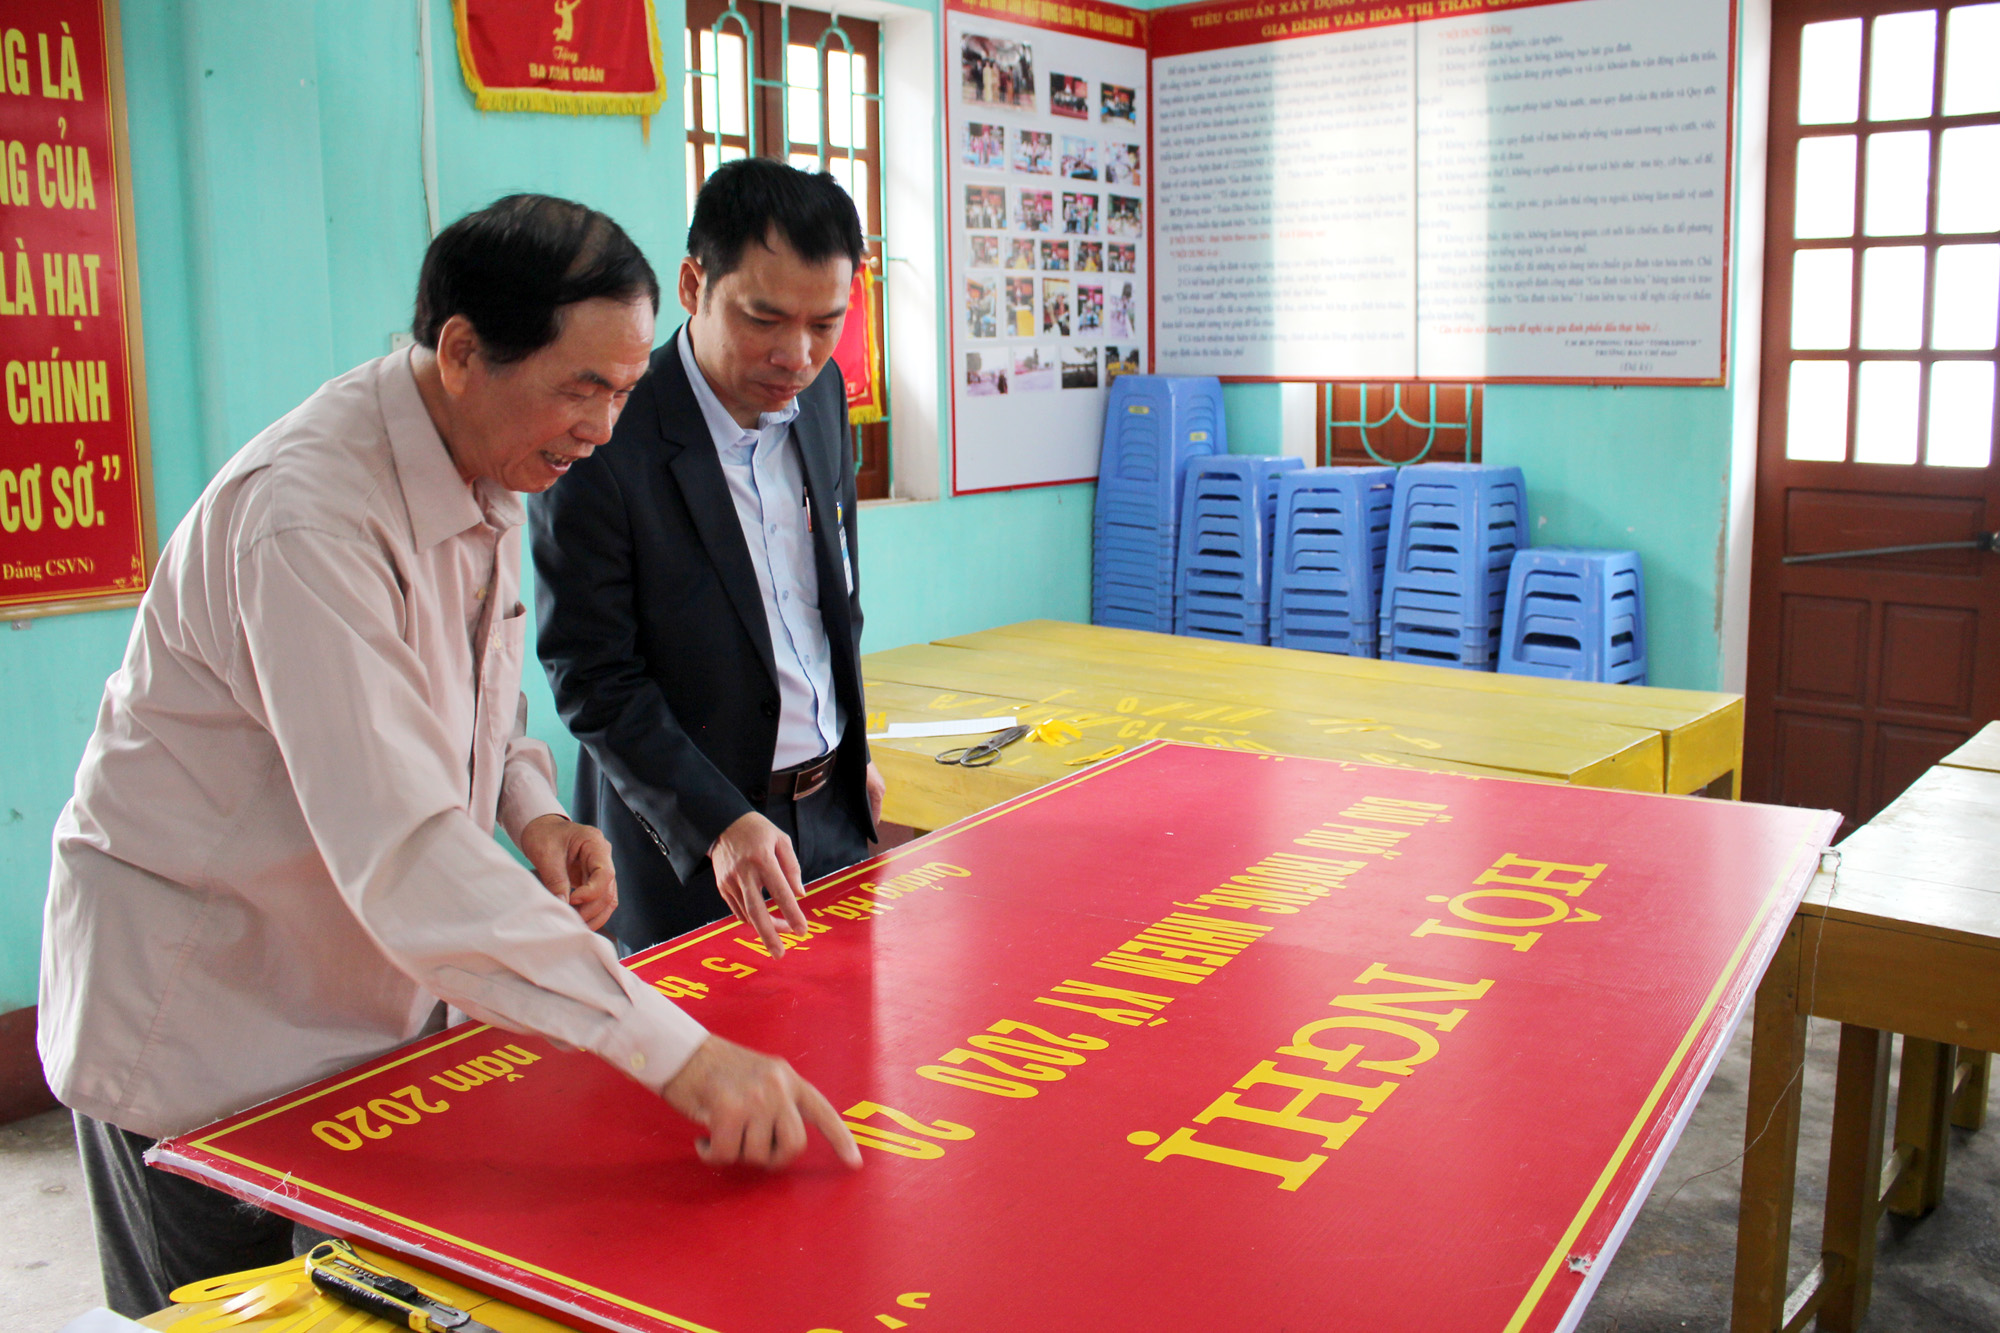 Khâu cuối cùng trong công tác trang trí khánh tiết tại điểm bầu cử khu phố Trần Khánh Dư (thị trấn Quảng Hà, huyện Hải Hà) đang được gấp rút thực hiện